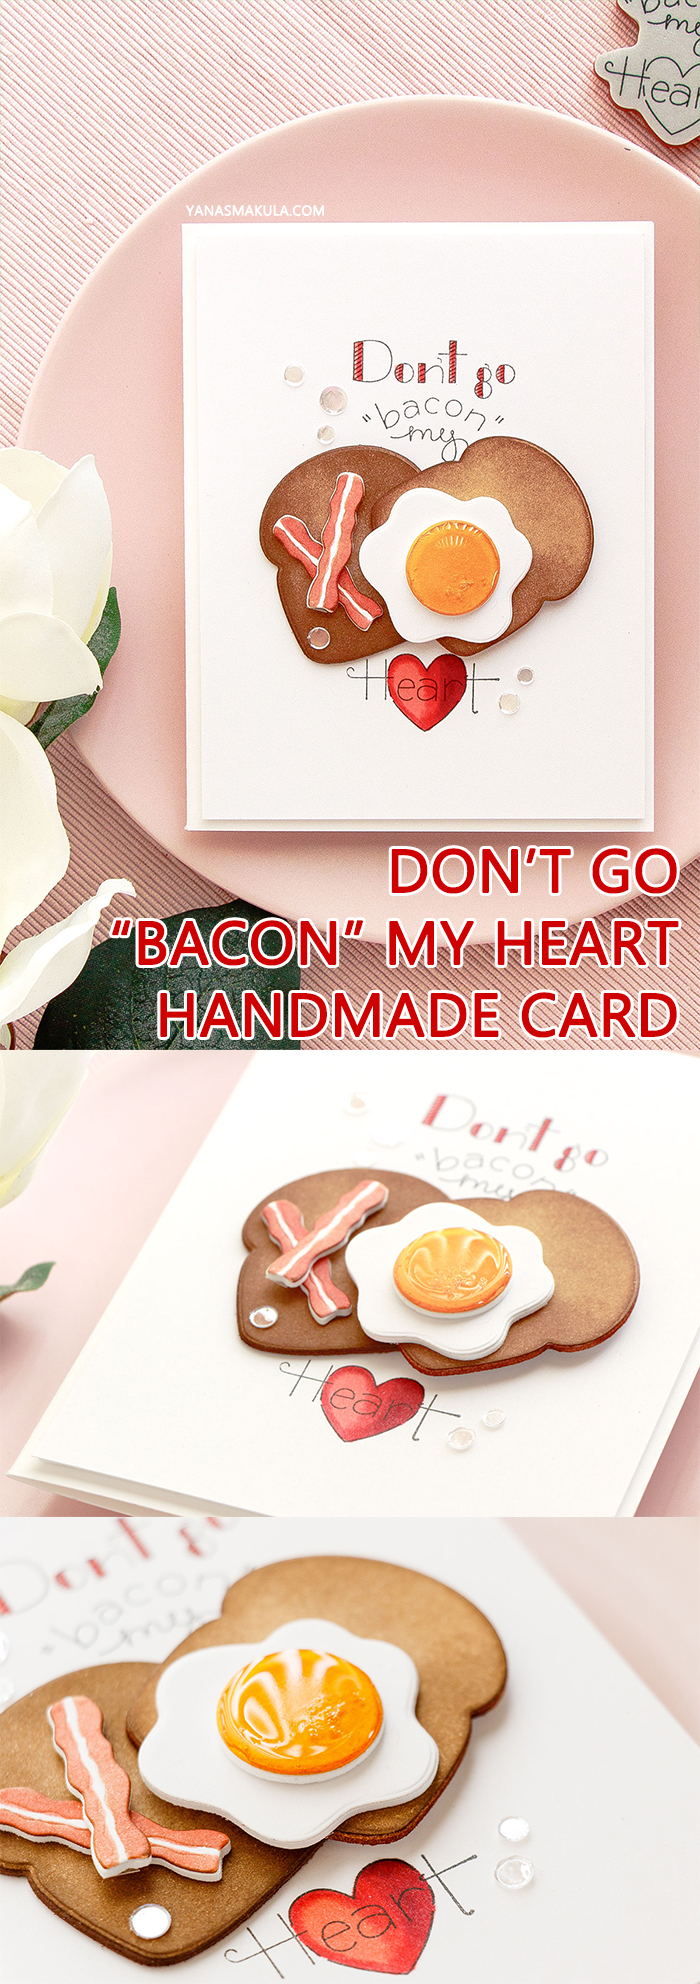 Spellbinders | Don't Go "Bacon" My Heart card by Yana Smakula using Spellbinders Breakfast Club Cling Stamp and Die Set #spellbinders #cardmaking